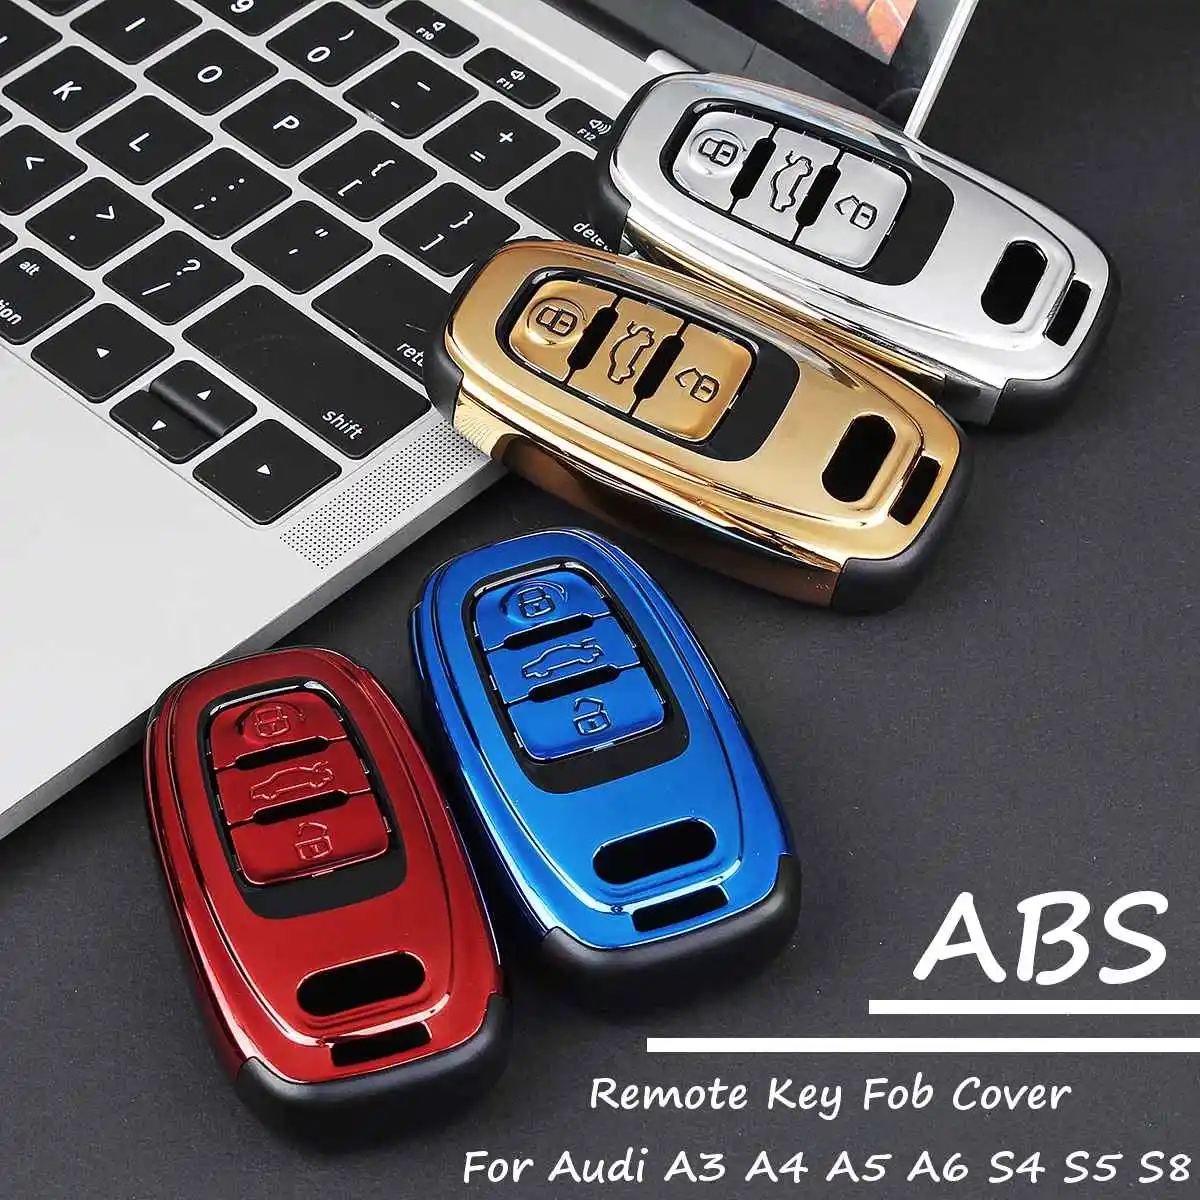 Автомобильный ключ крышка из АБС-пластика Пластик для Audi A3 A4 A5 A6 A7 A8 Q3 Q5 Q7 S4 S5 S8 TT R8 видоизмененный ключ дистанционного управления